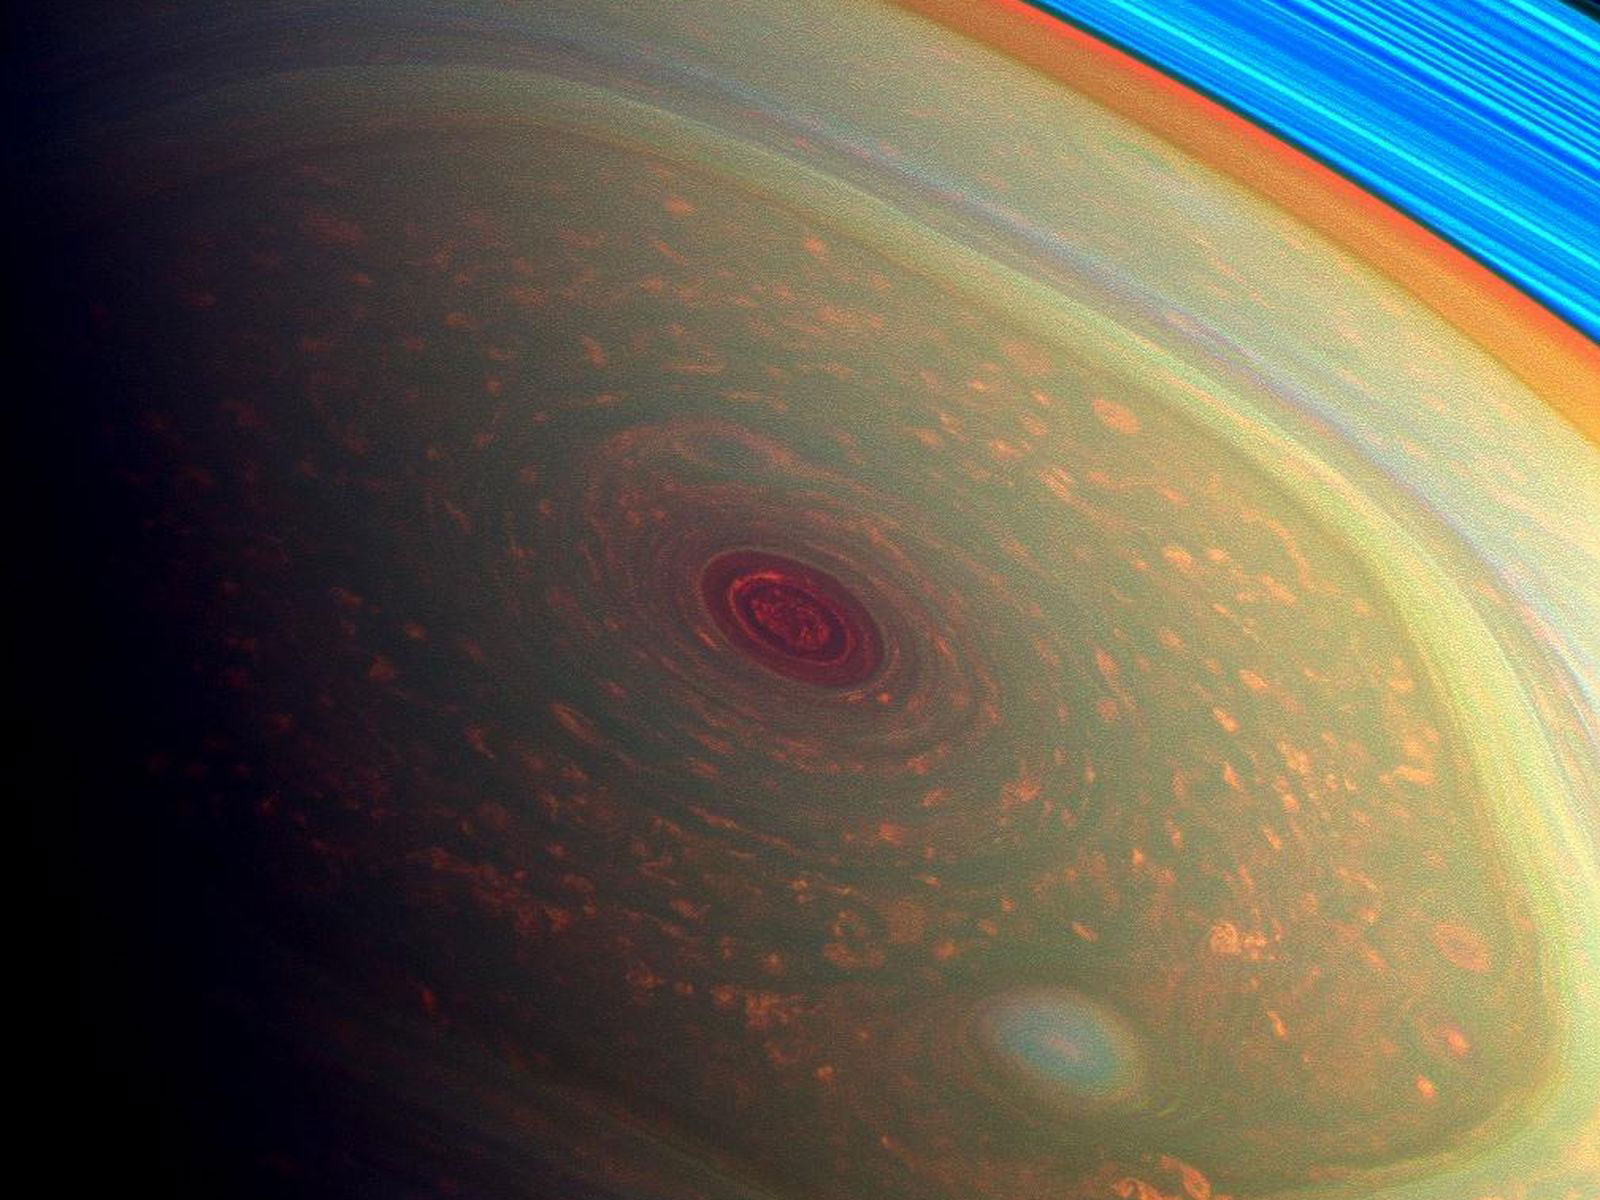 Saturn cassini polar vortex storm 2013